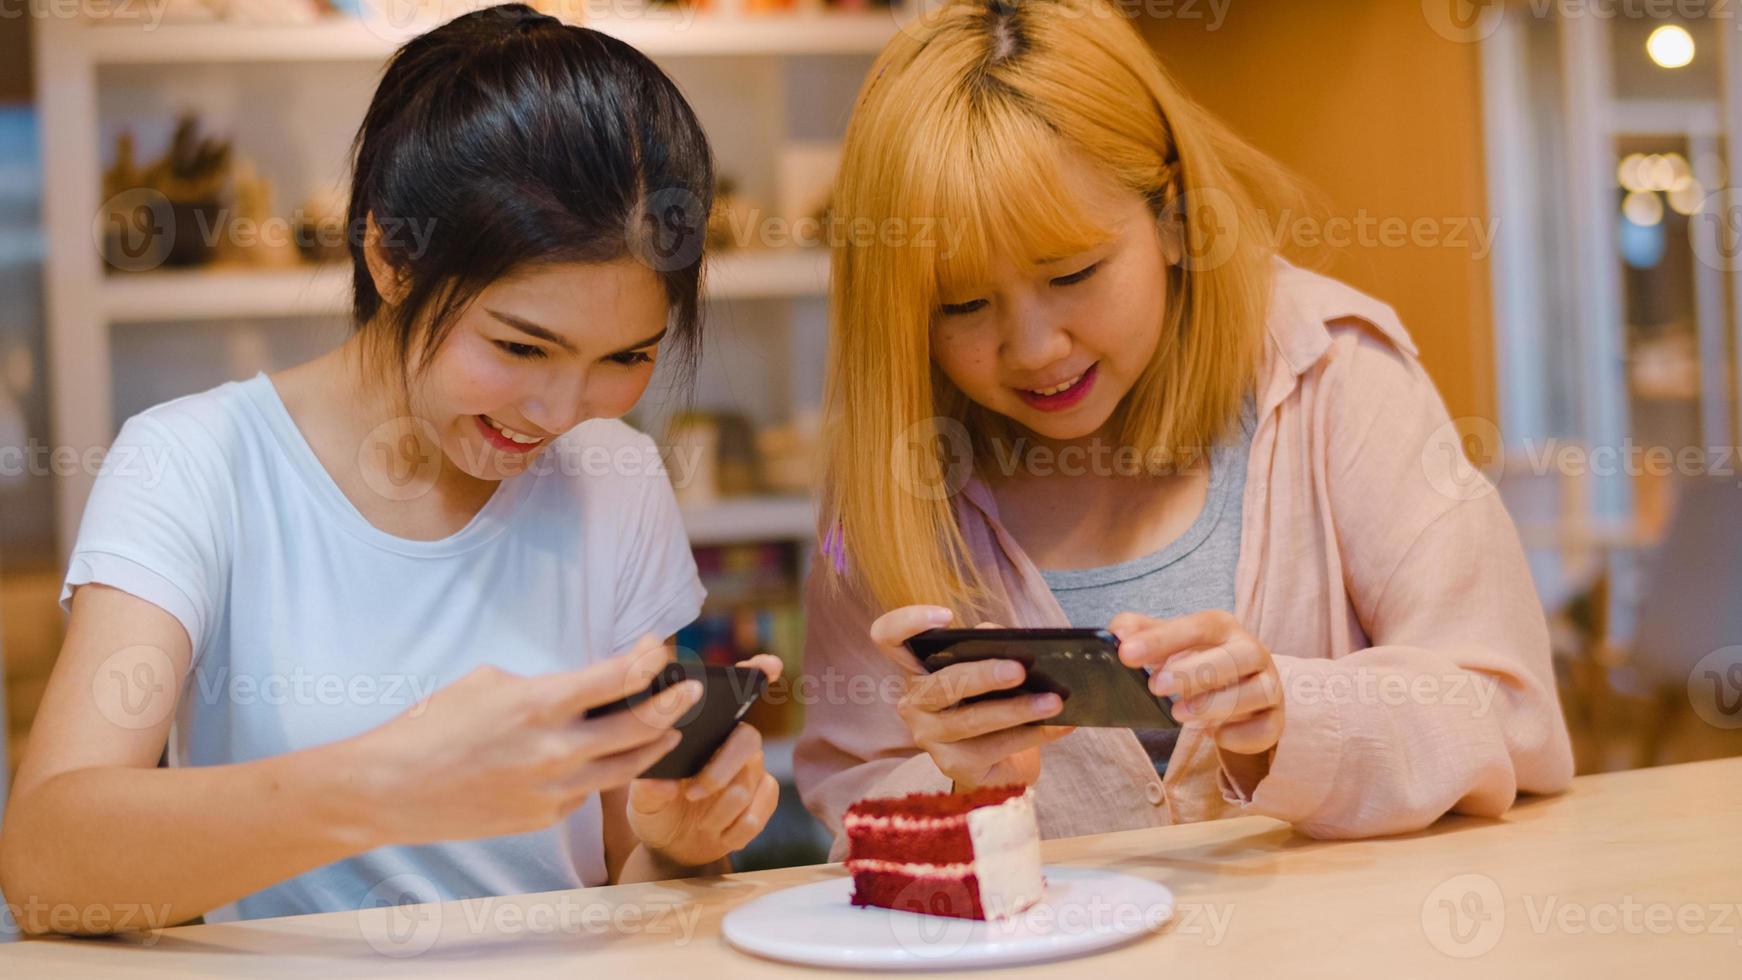 vrolijke jonge aziatische vriend die telefoon gebruikt om een foto te maken eten en cake in de coffeeshop. twee vrolijke aantrekkelijke aziatische dame samen in restaurant of café. vakantie-activiteit of modern lifestyle-concept.